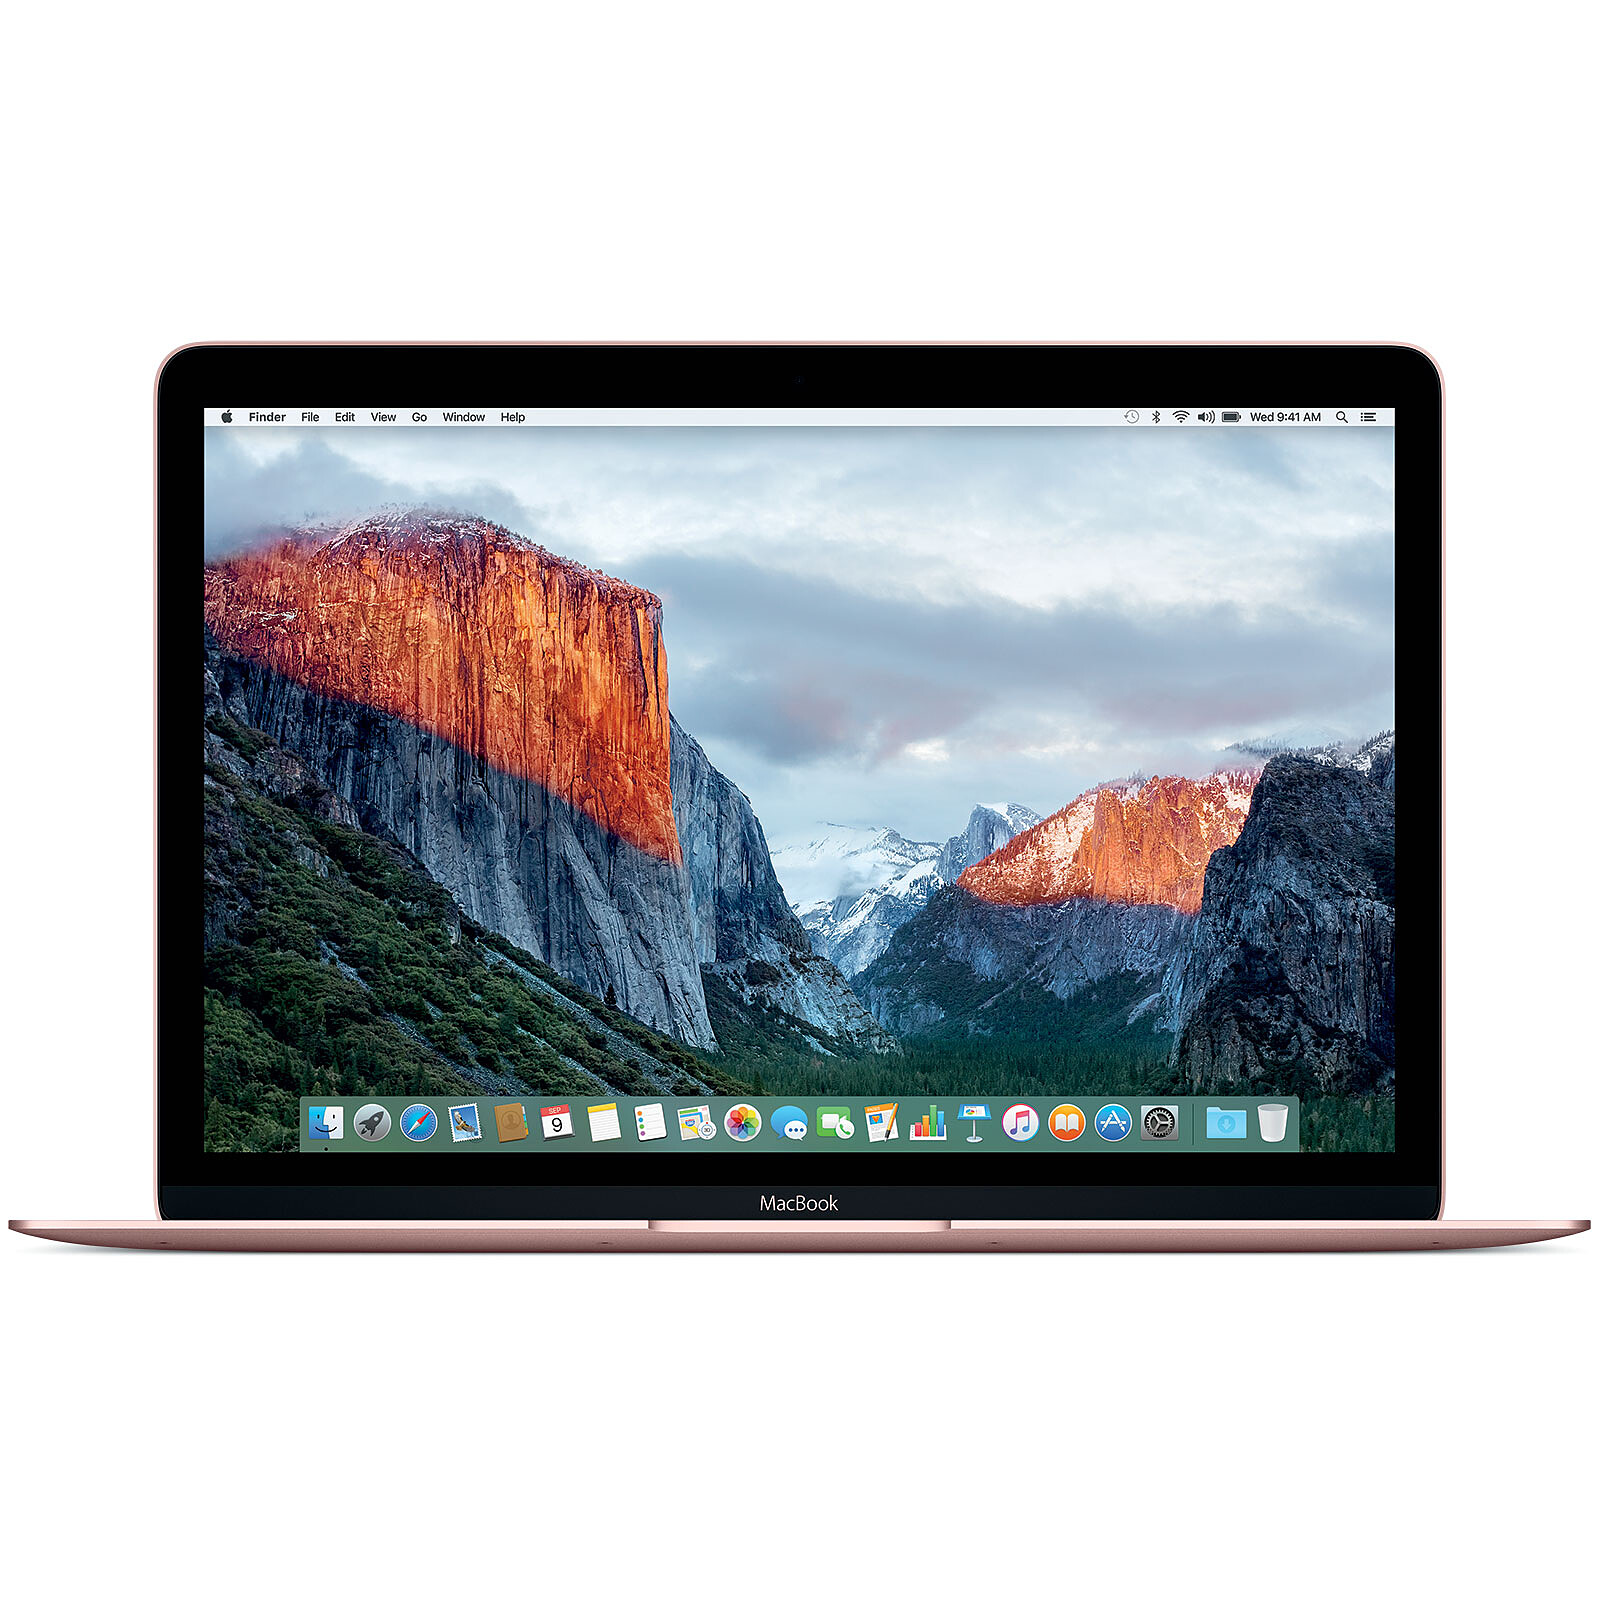 Notre avis sur le MacBook Pro 13 pouces 2020 : fiche technique complète et  tarifs